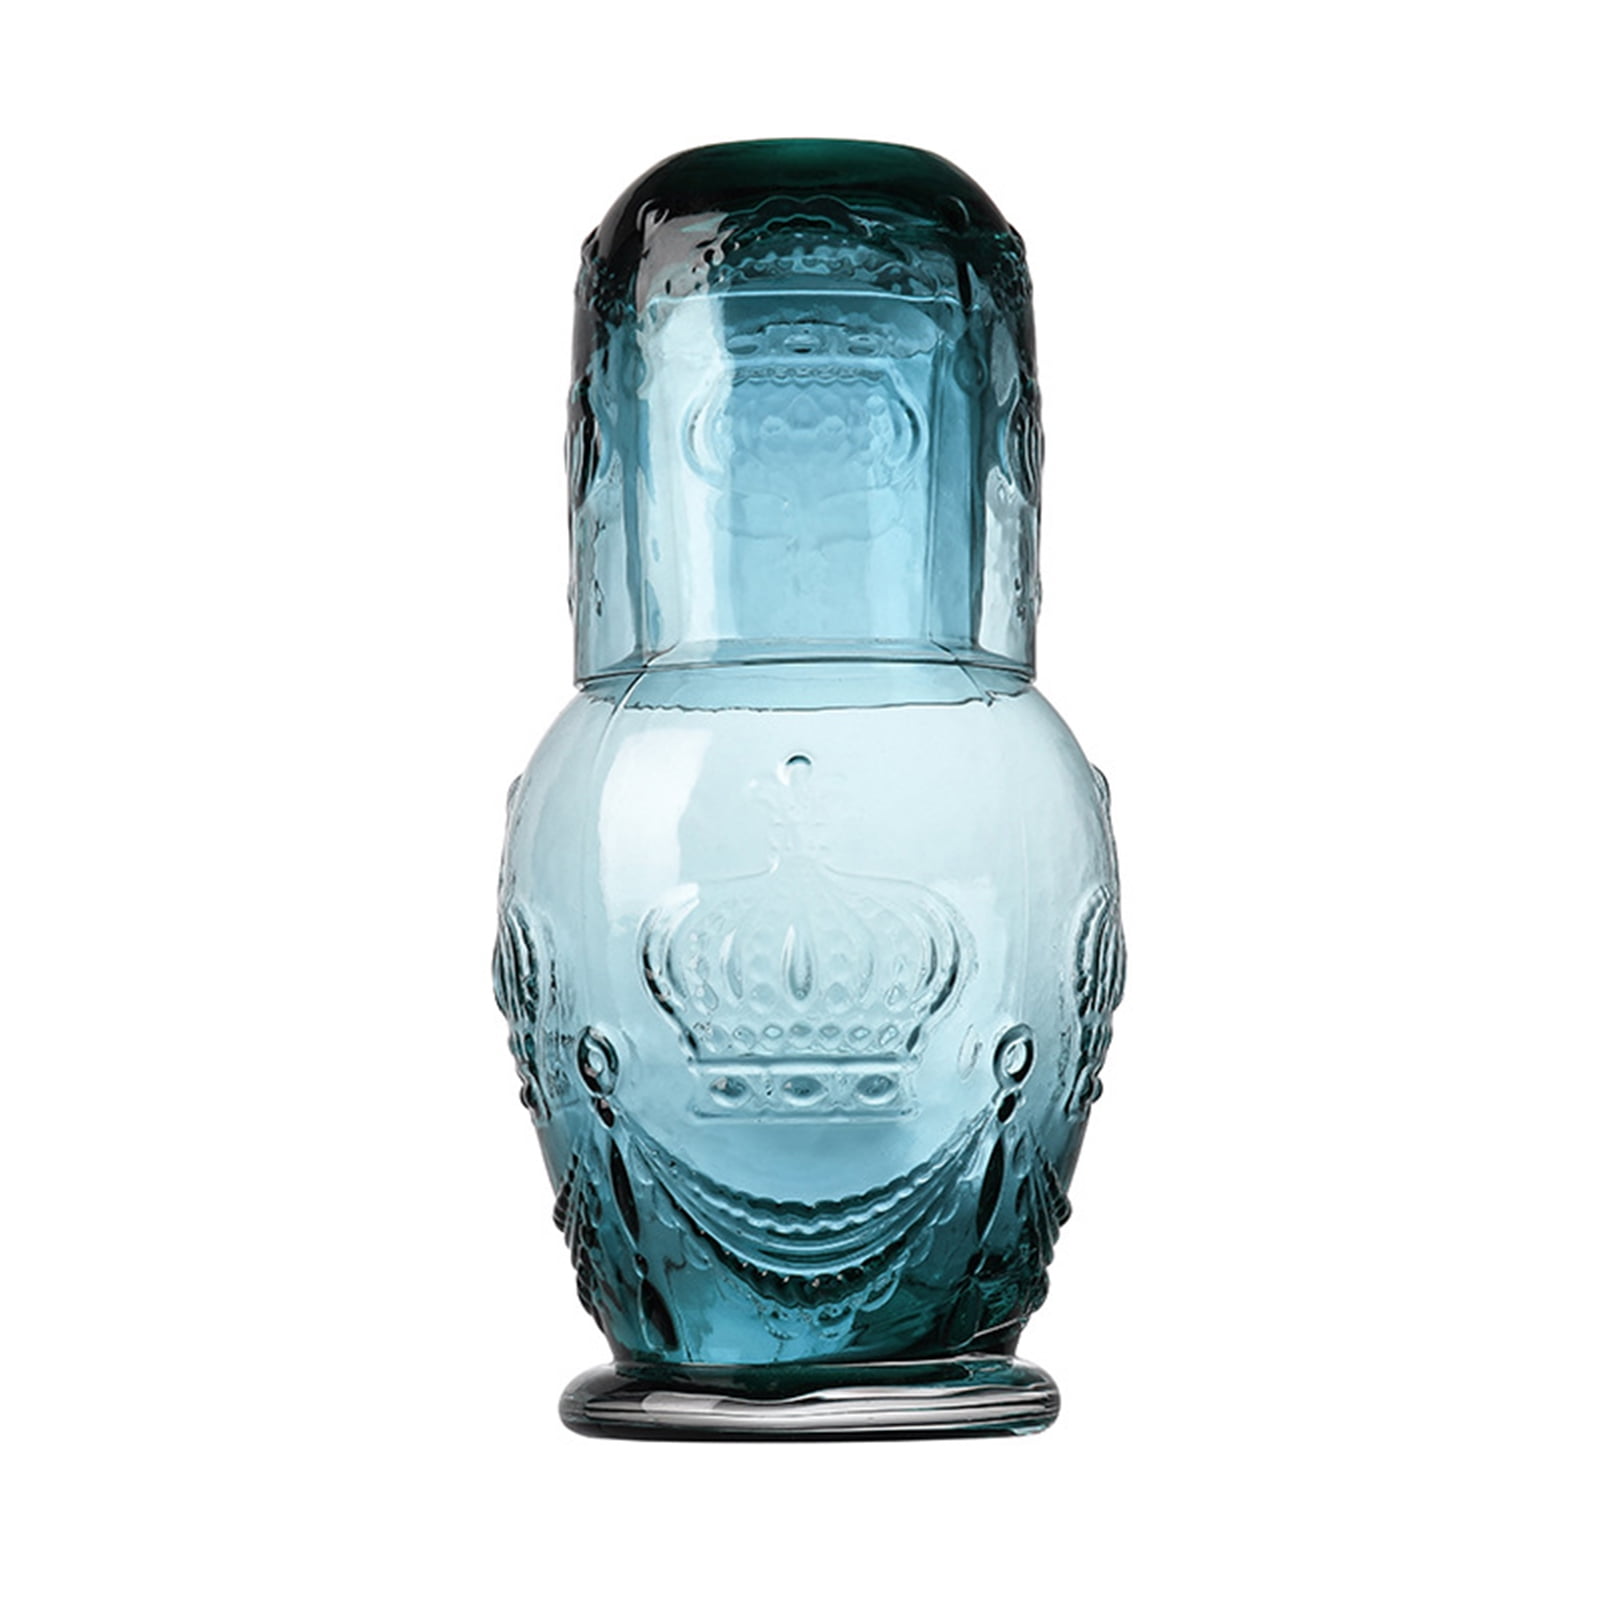 Mint Vintage Embossed Fruit Refrigerator Glass Juice Carafe Pitcher w/ blue  lid